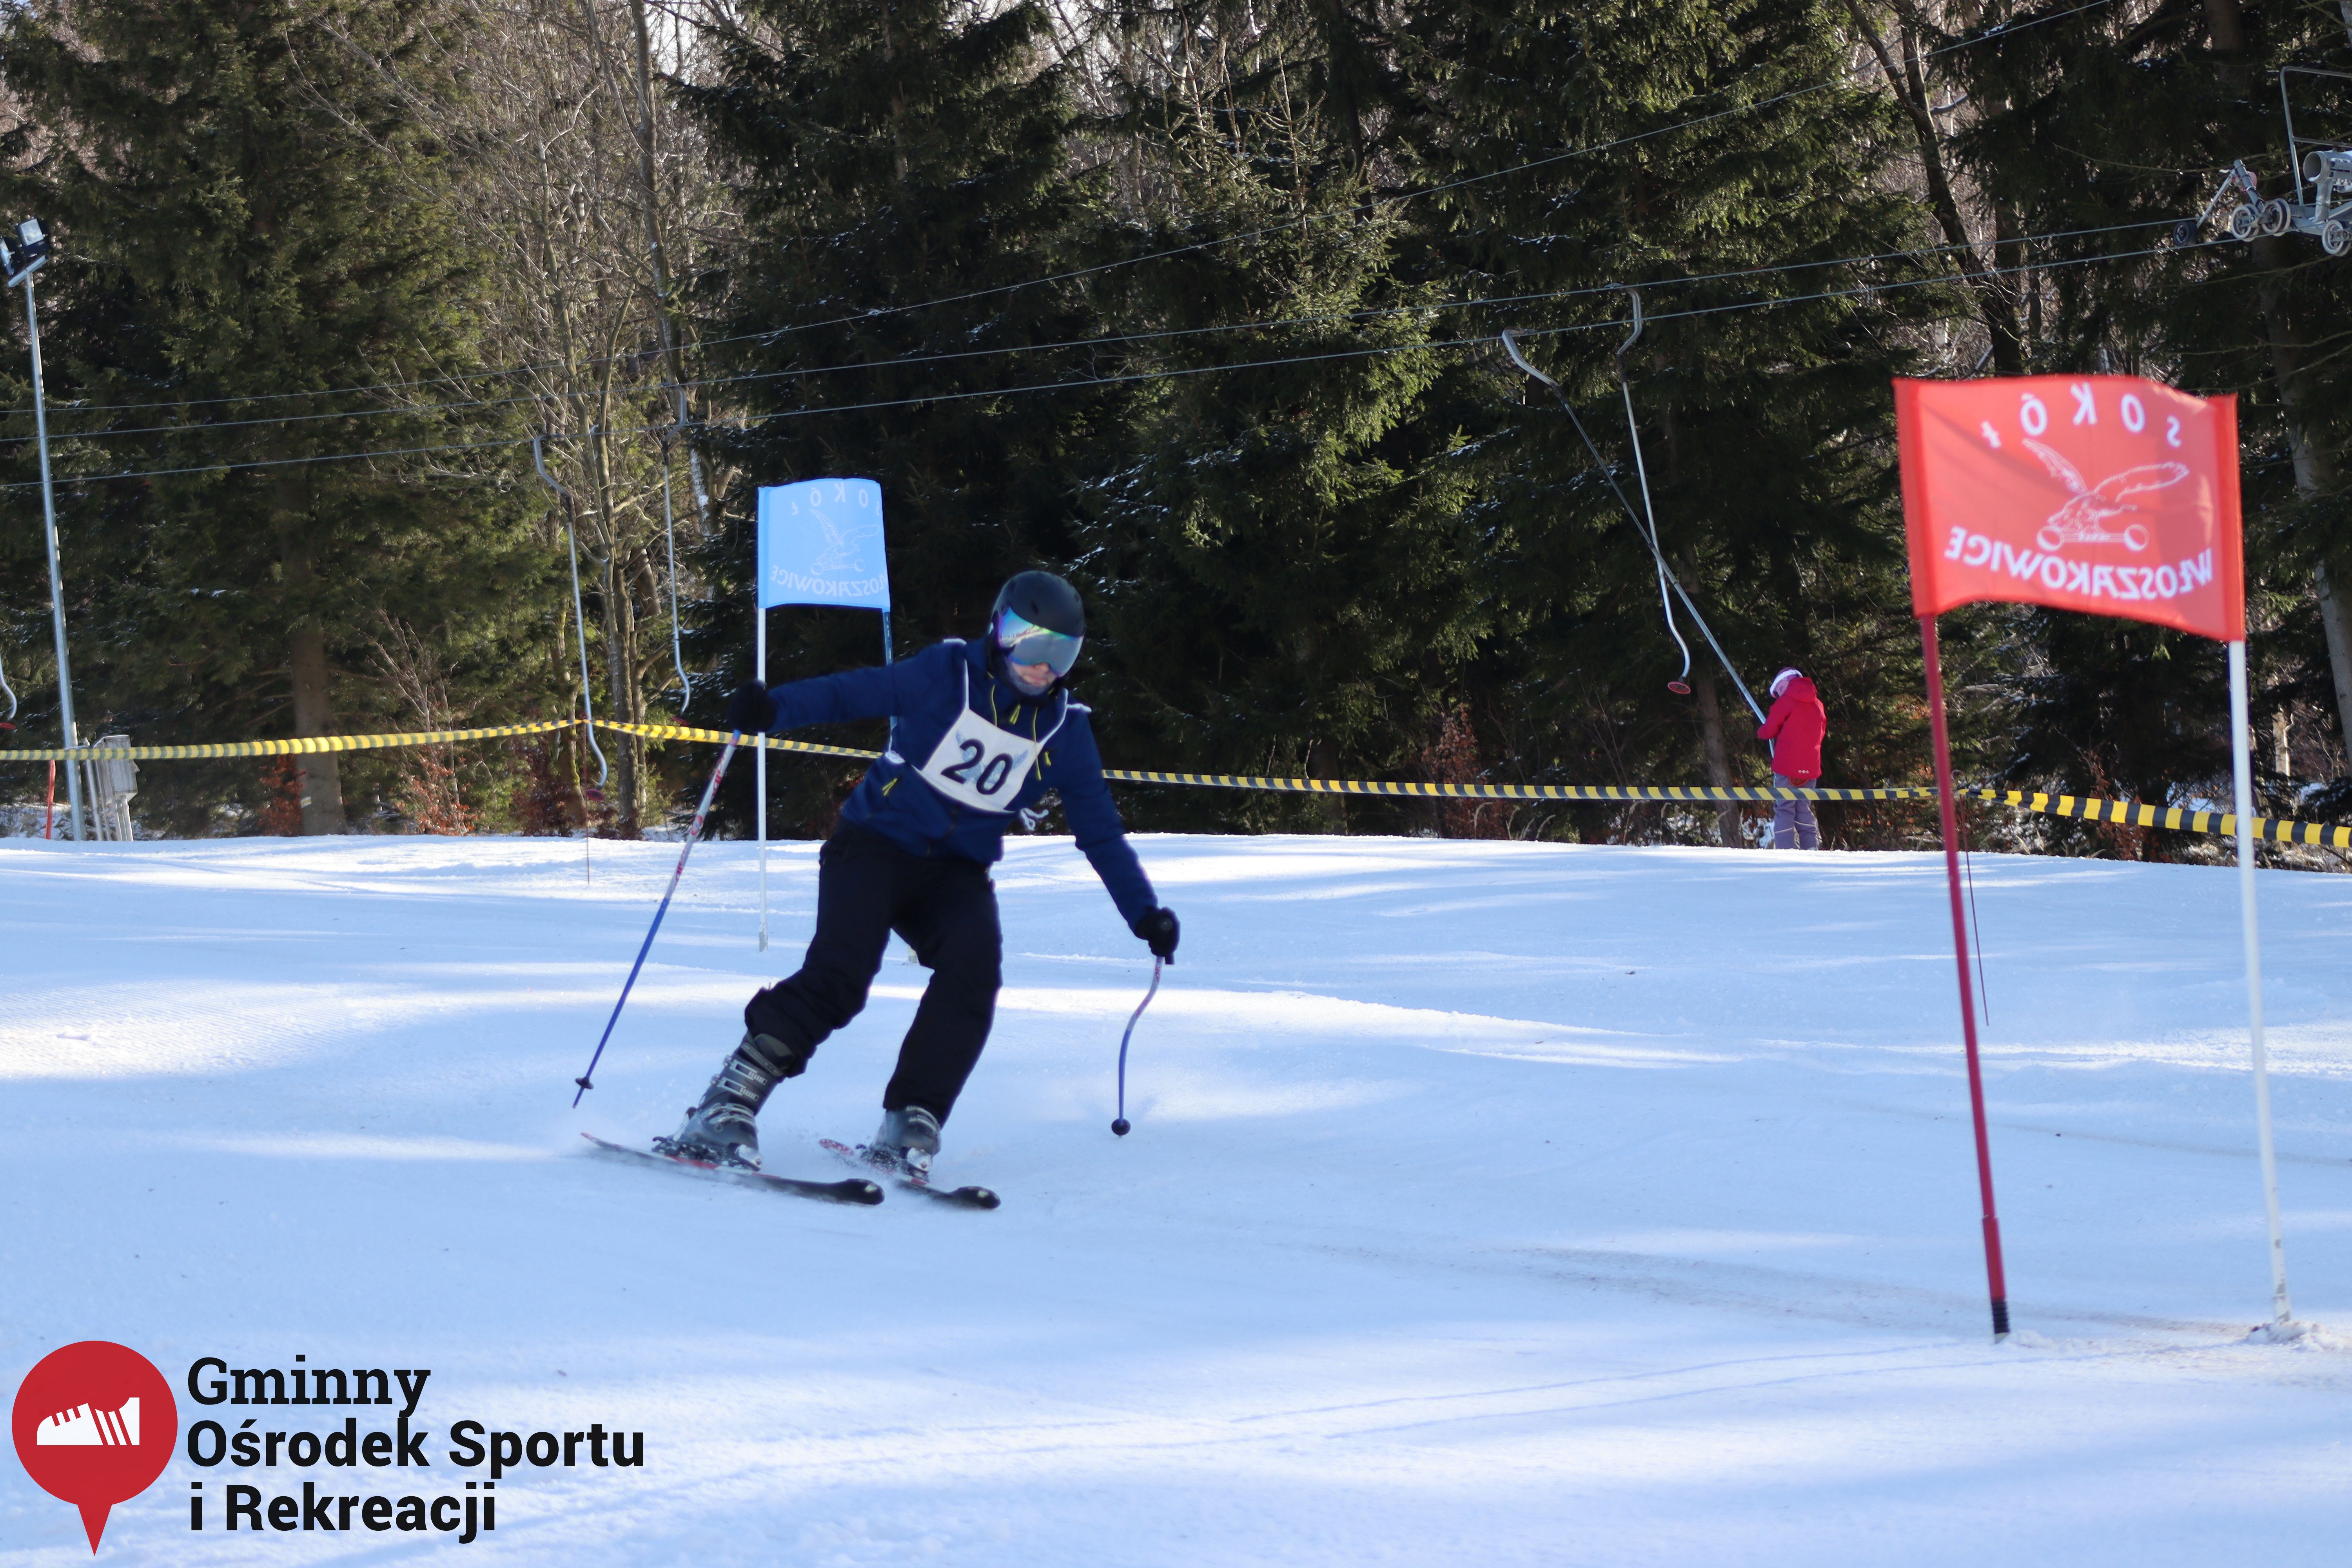 2022.02.12 - 18. Mistrzostwa Gminy Woszakowice w narciarstwie054.jpg - 2,44 MB